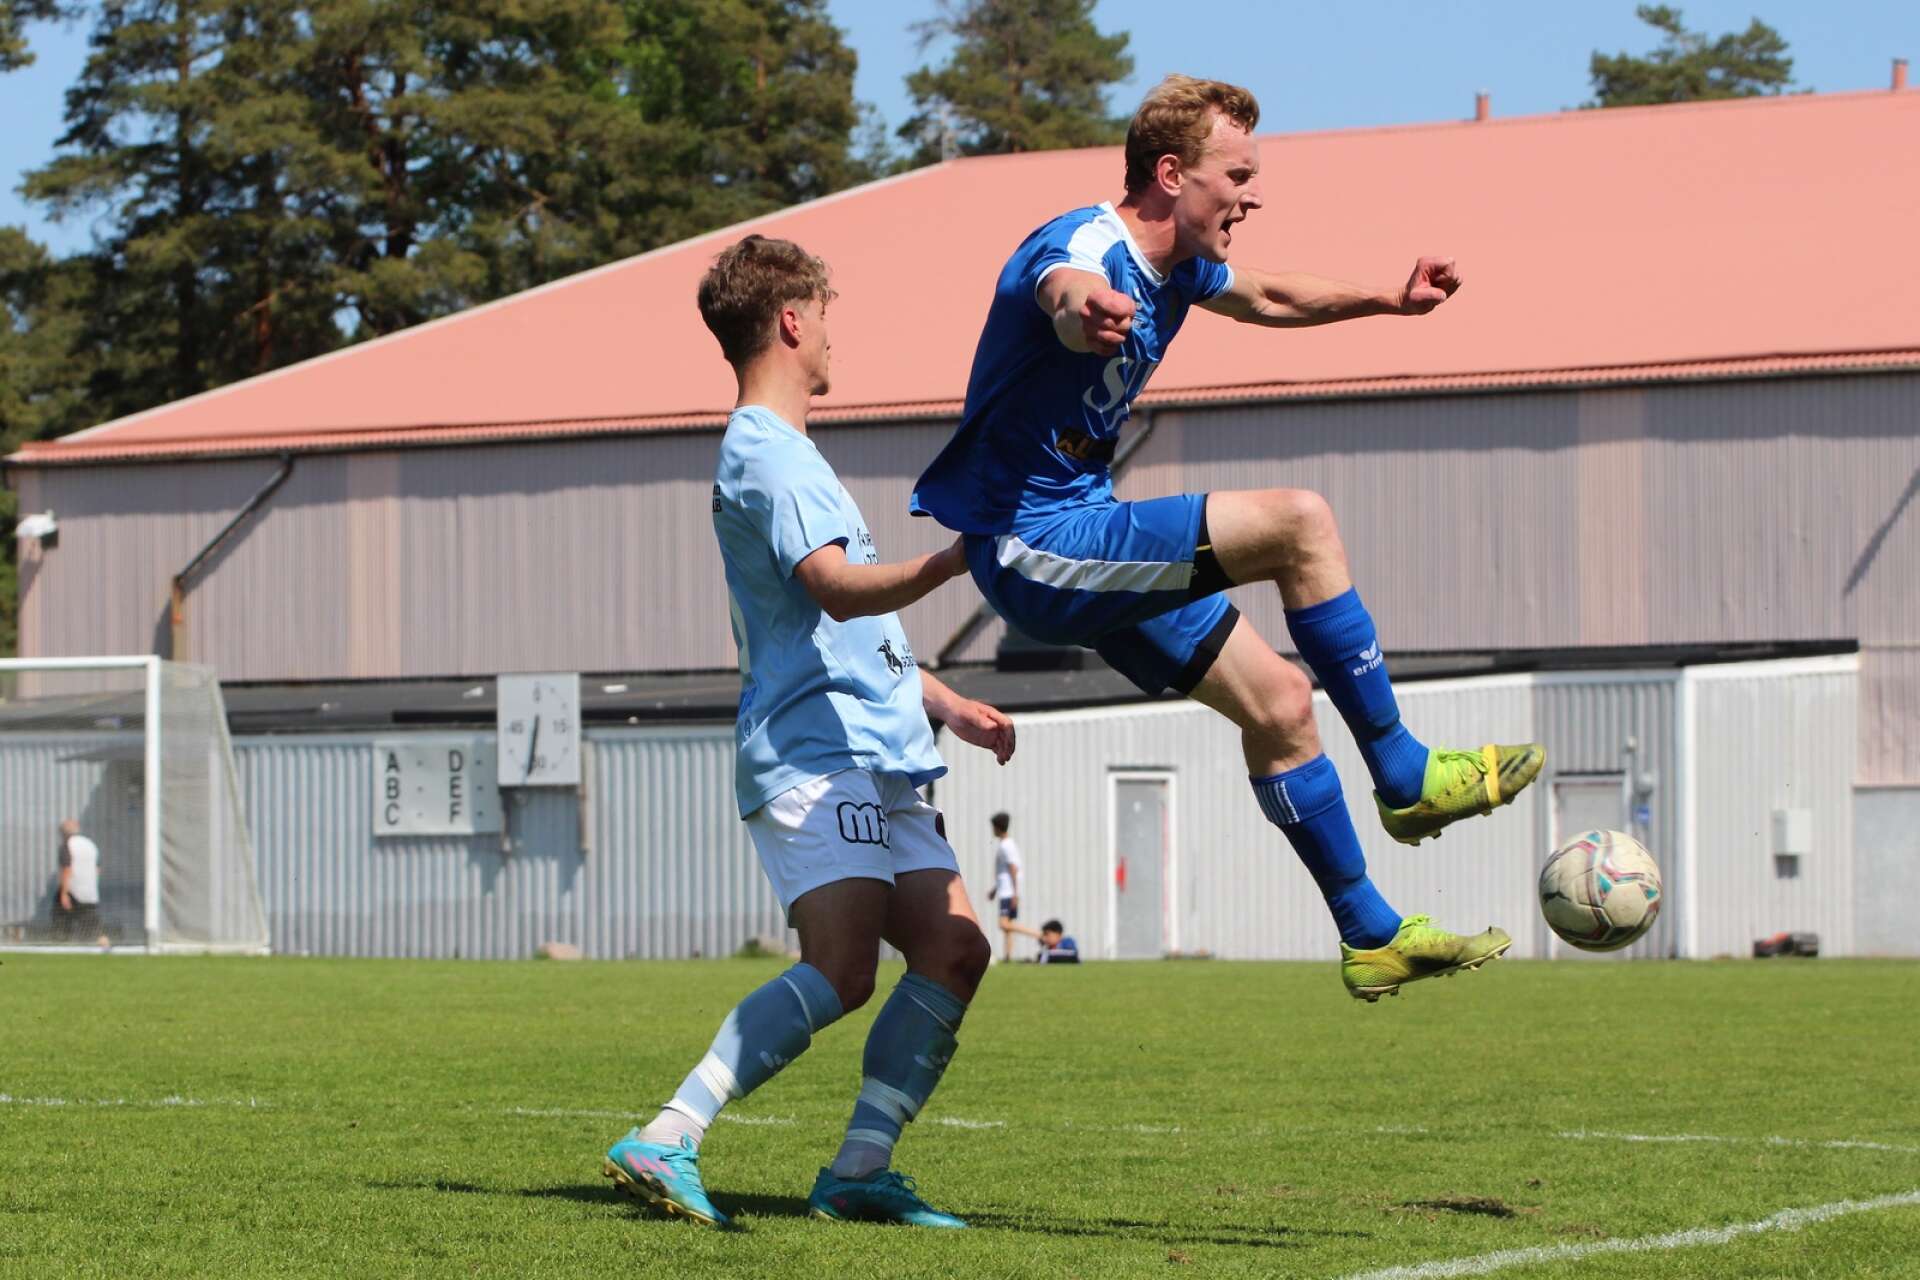 Victor Remneland får frispark efter att Samuel Schullström gått in hårt i ryggen på honom.

Fotboll på Rösvallen, Åmål
Division 4 Bohuslän–Dalsland
IF Viken – Eds FF 0–2 (0–1)